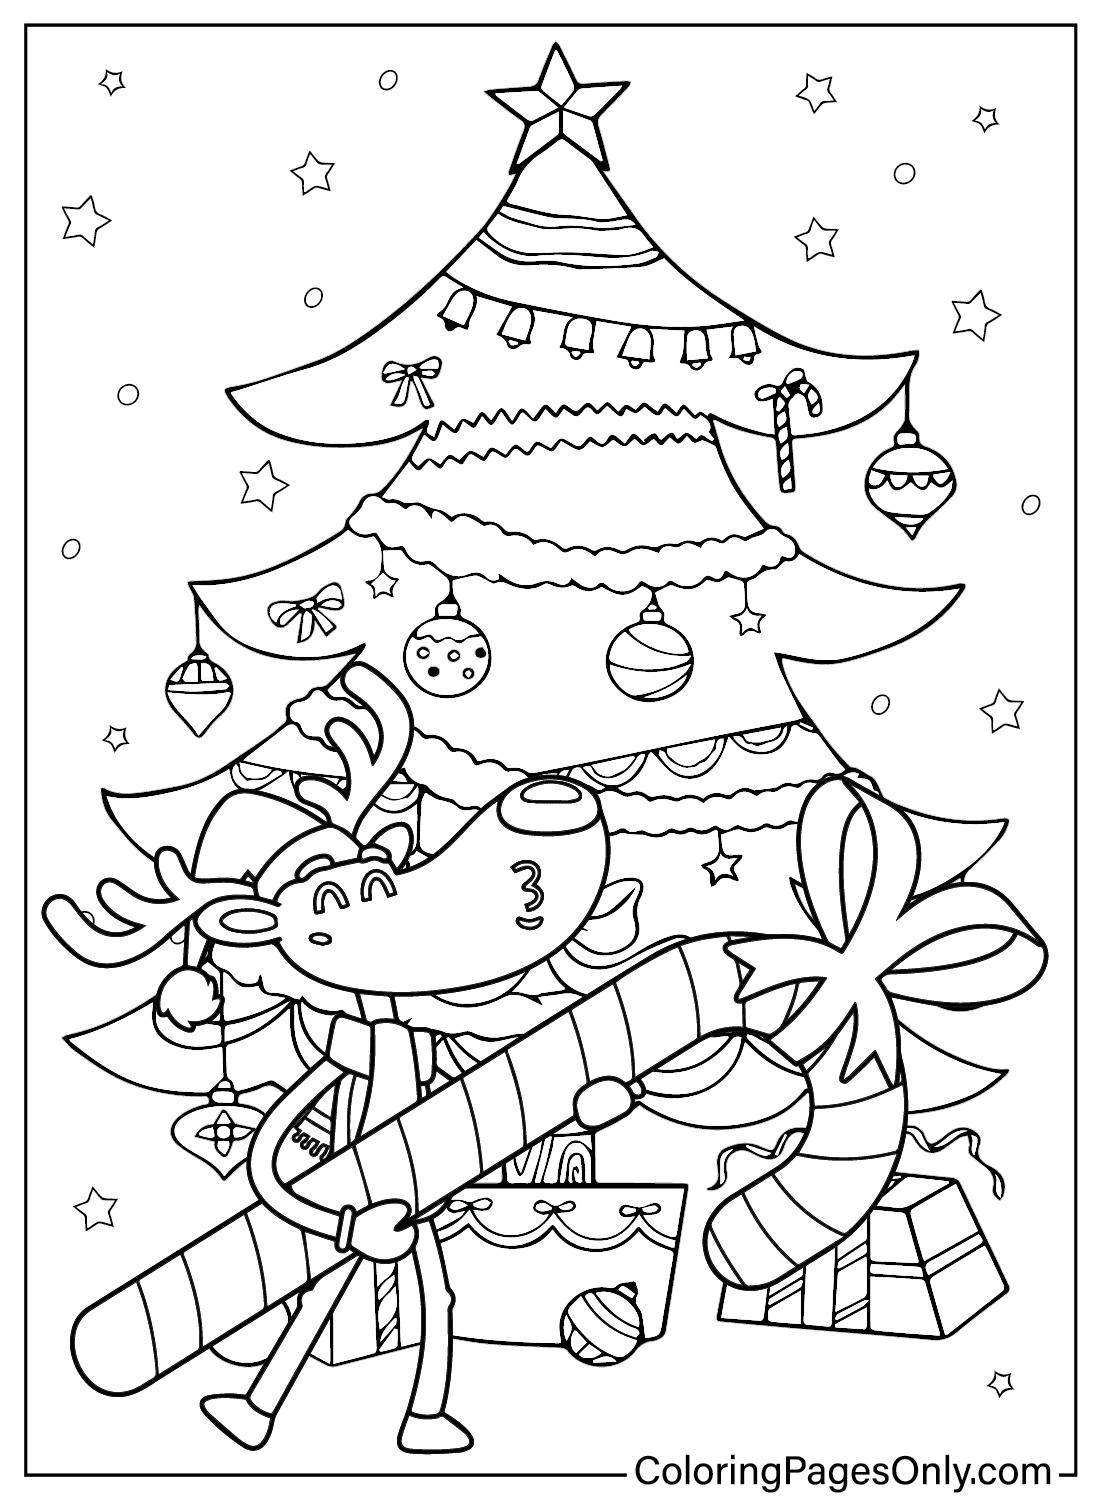 Dibujo Para Colorear De Baston De Caramelo De Navidad Gratis